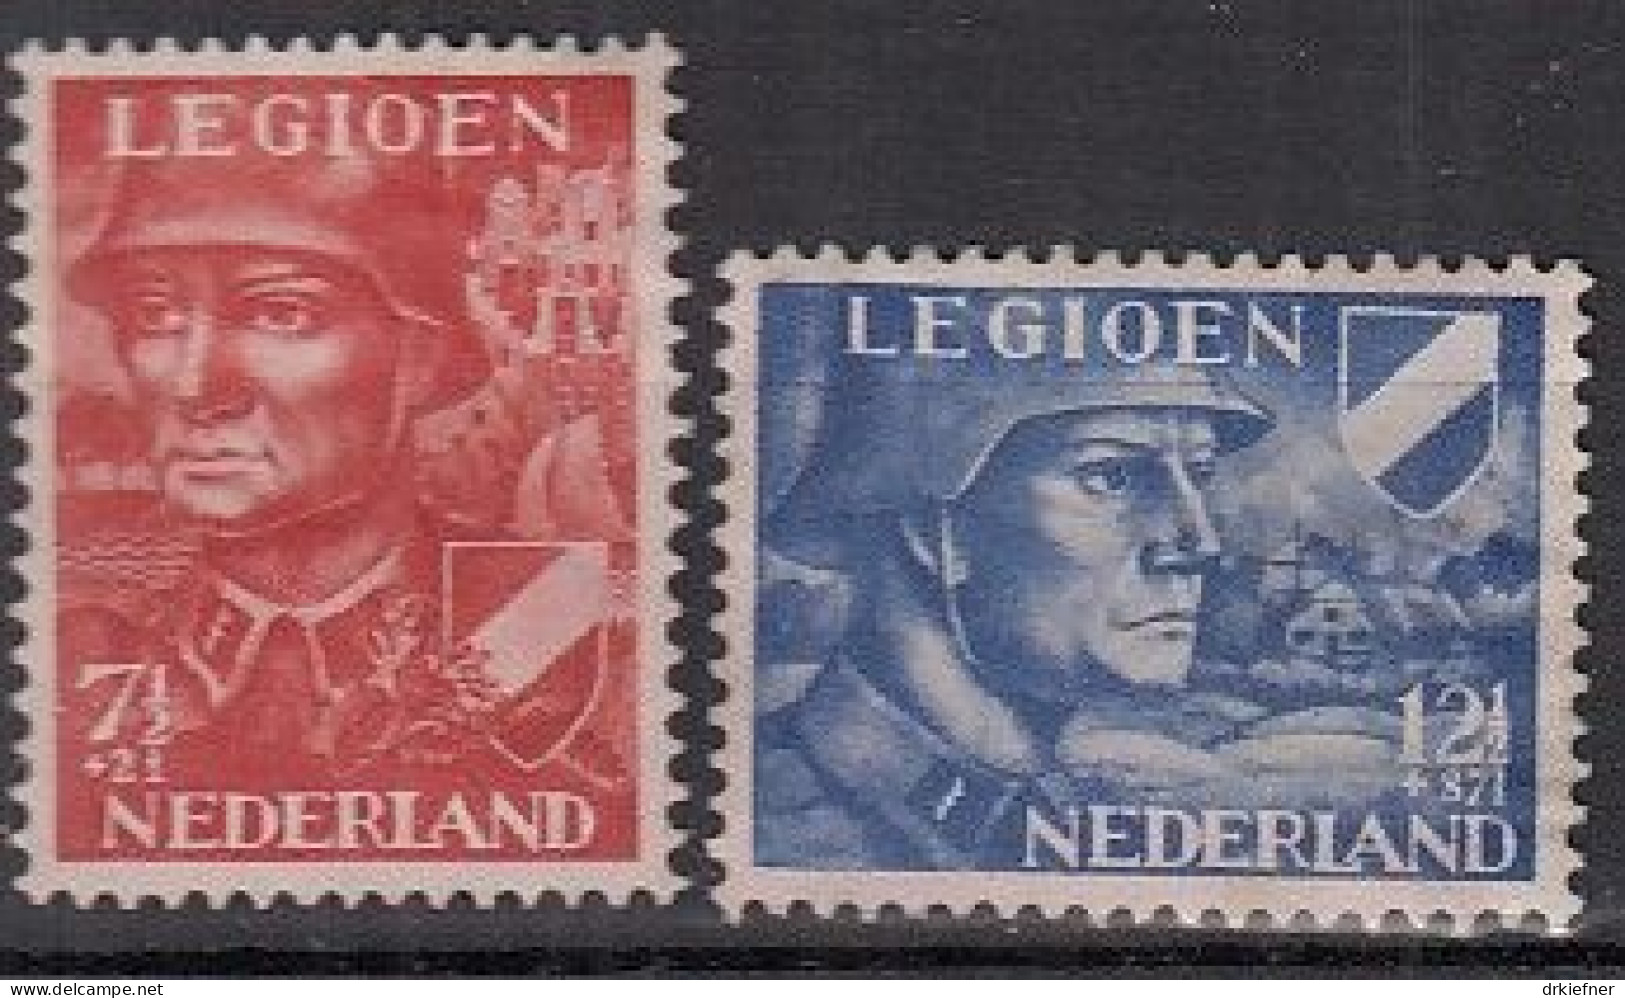 NIEDERLANDE 402-403, Postfrisch **, Niederländische Legion, 1942 - Nuovi